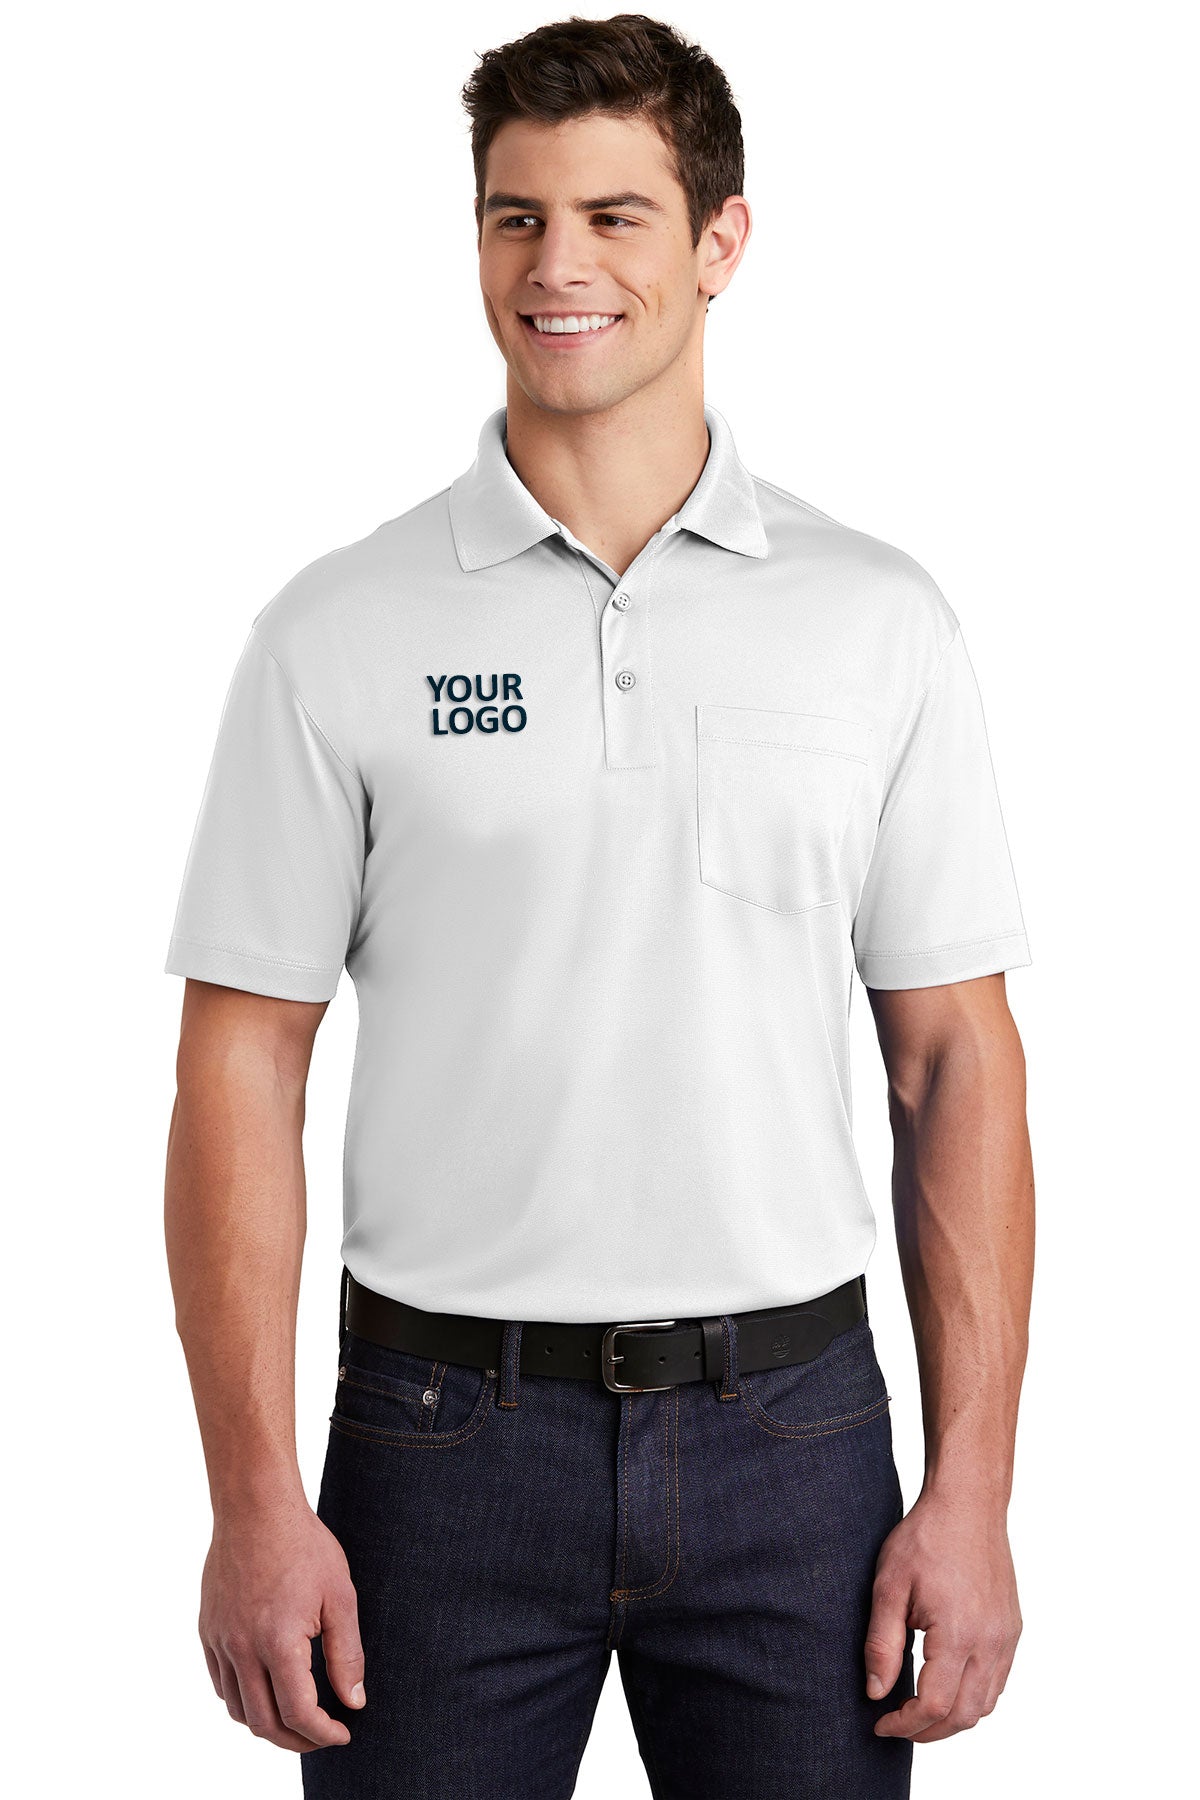 Sport-Tek White ST651 polo shirts with logos